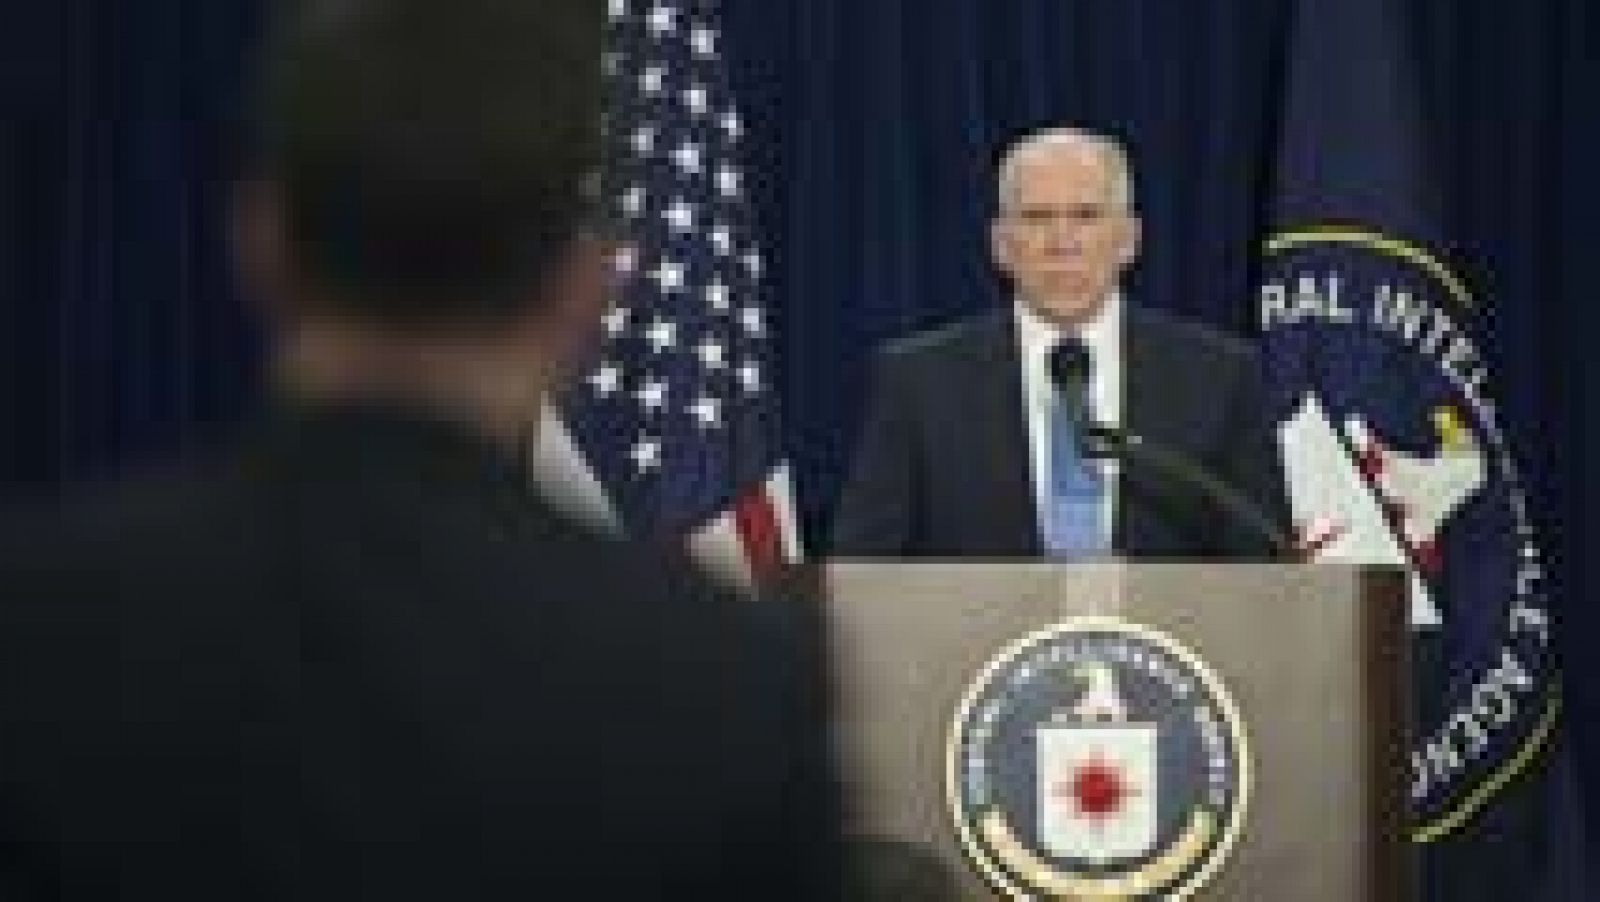 El jefe de la CIA reconoce prácticas "abominables", pero defiende la labor de sus agentes tras el 11-S